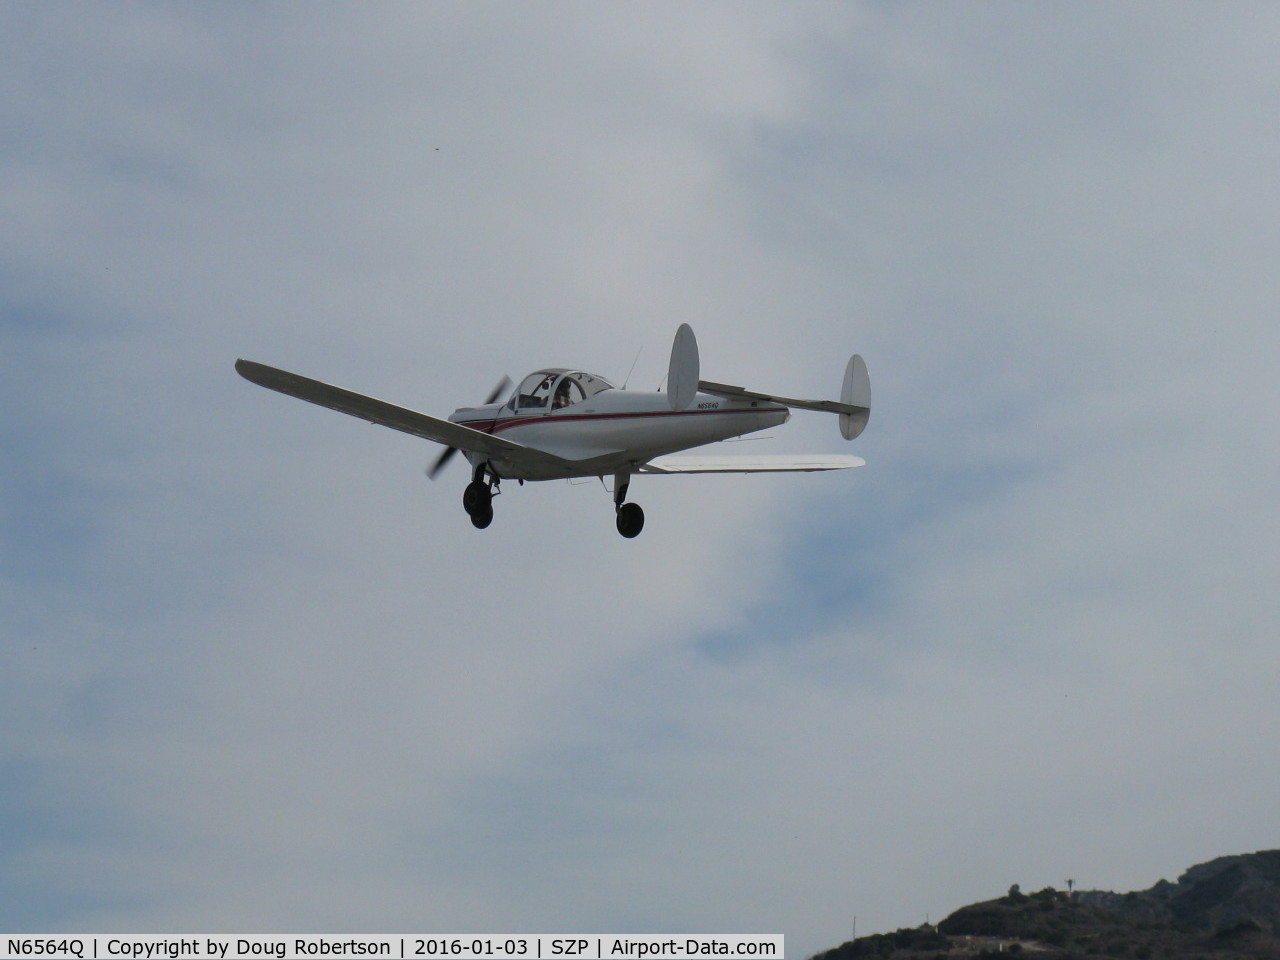 N6564Q, 1965 Alon A2 Aircoupe C/N A-64, 1965 Alon A-2 AIRCOUPE, Continental C-90 90 Hp, takeoff climb Rwy 04